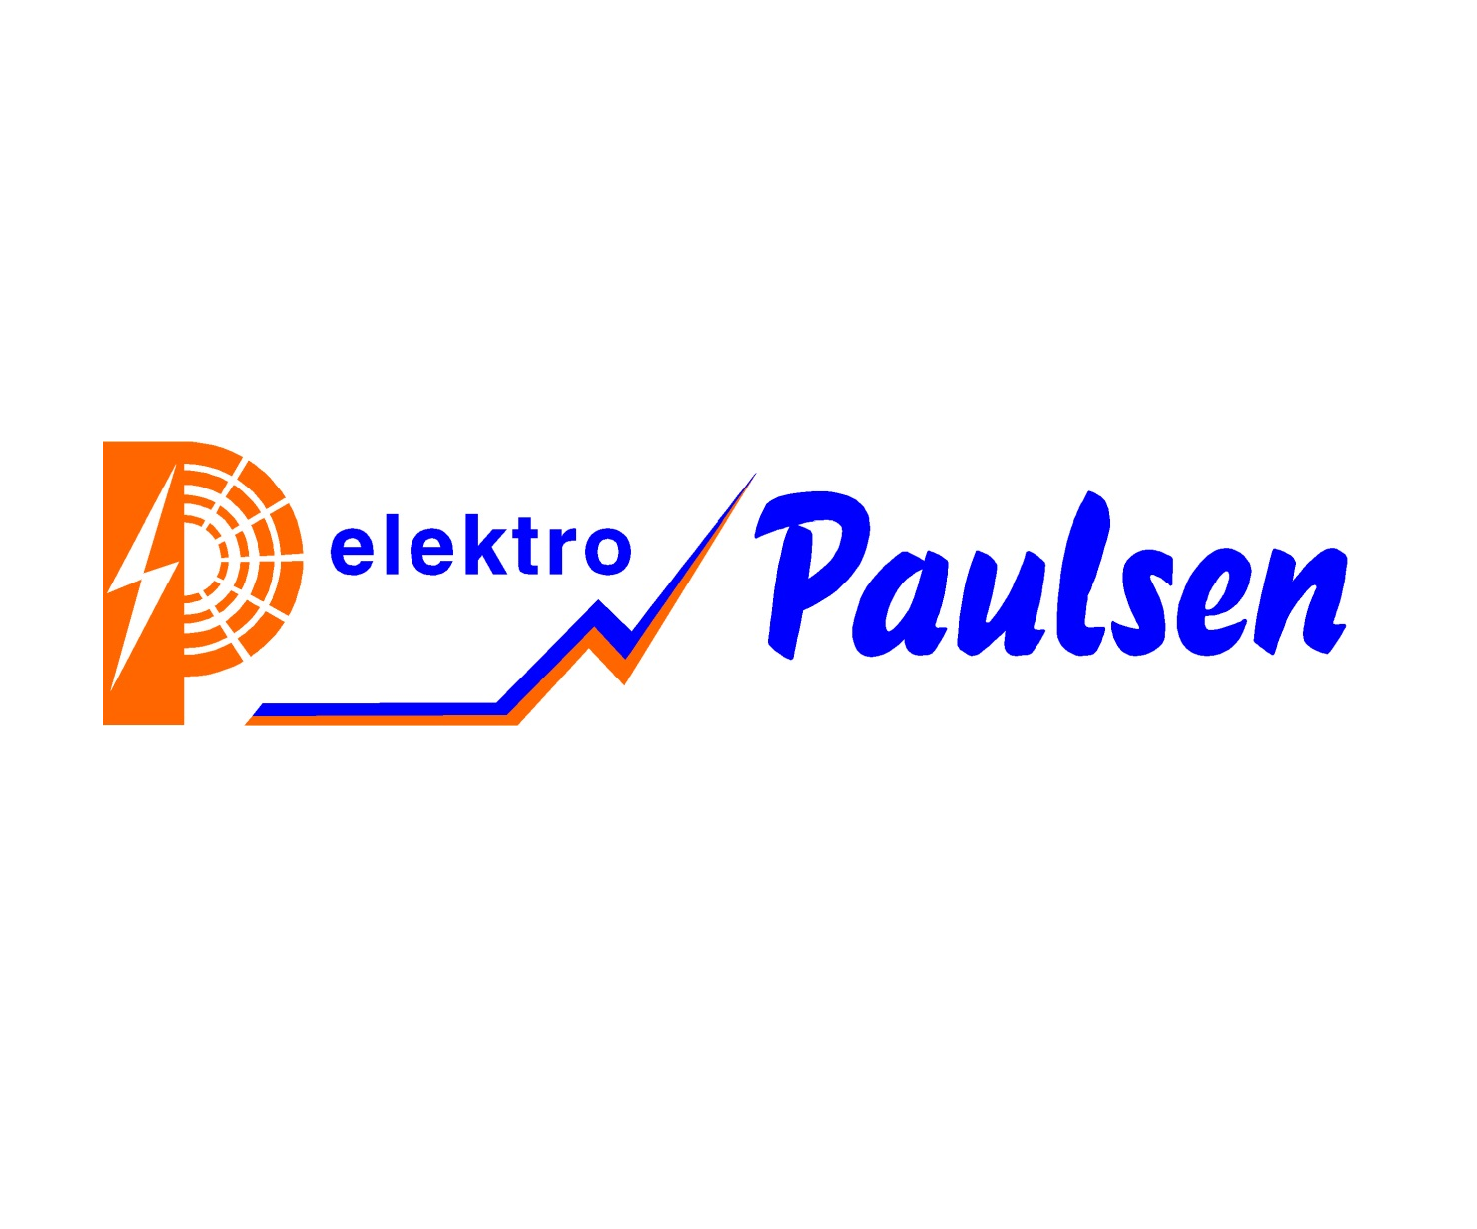 Elektro Paulsen